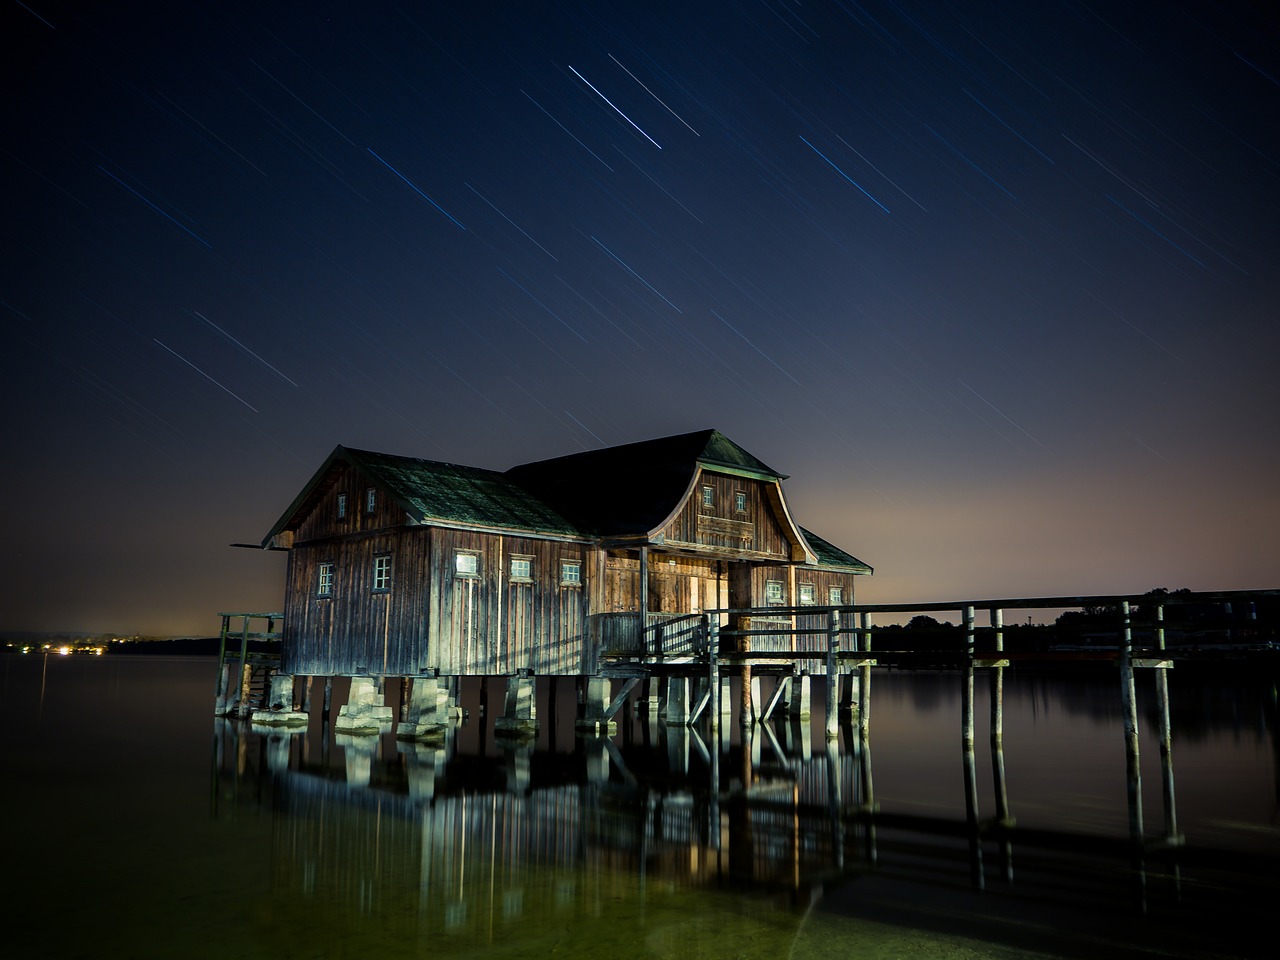 hut lake star free photo